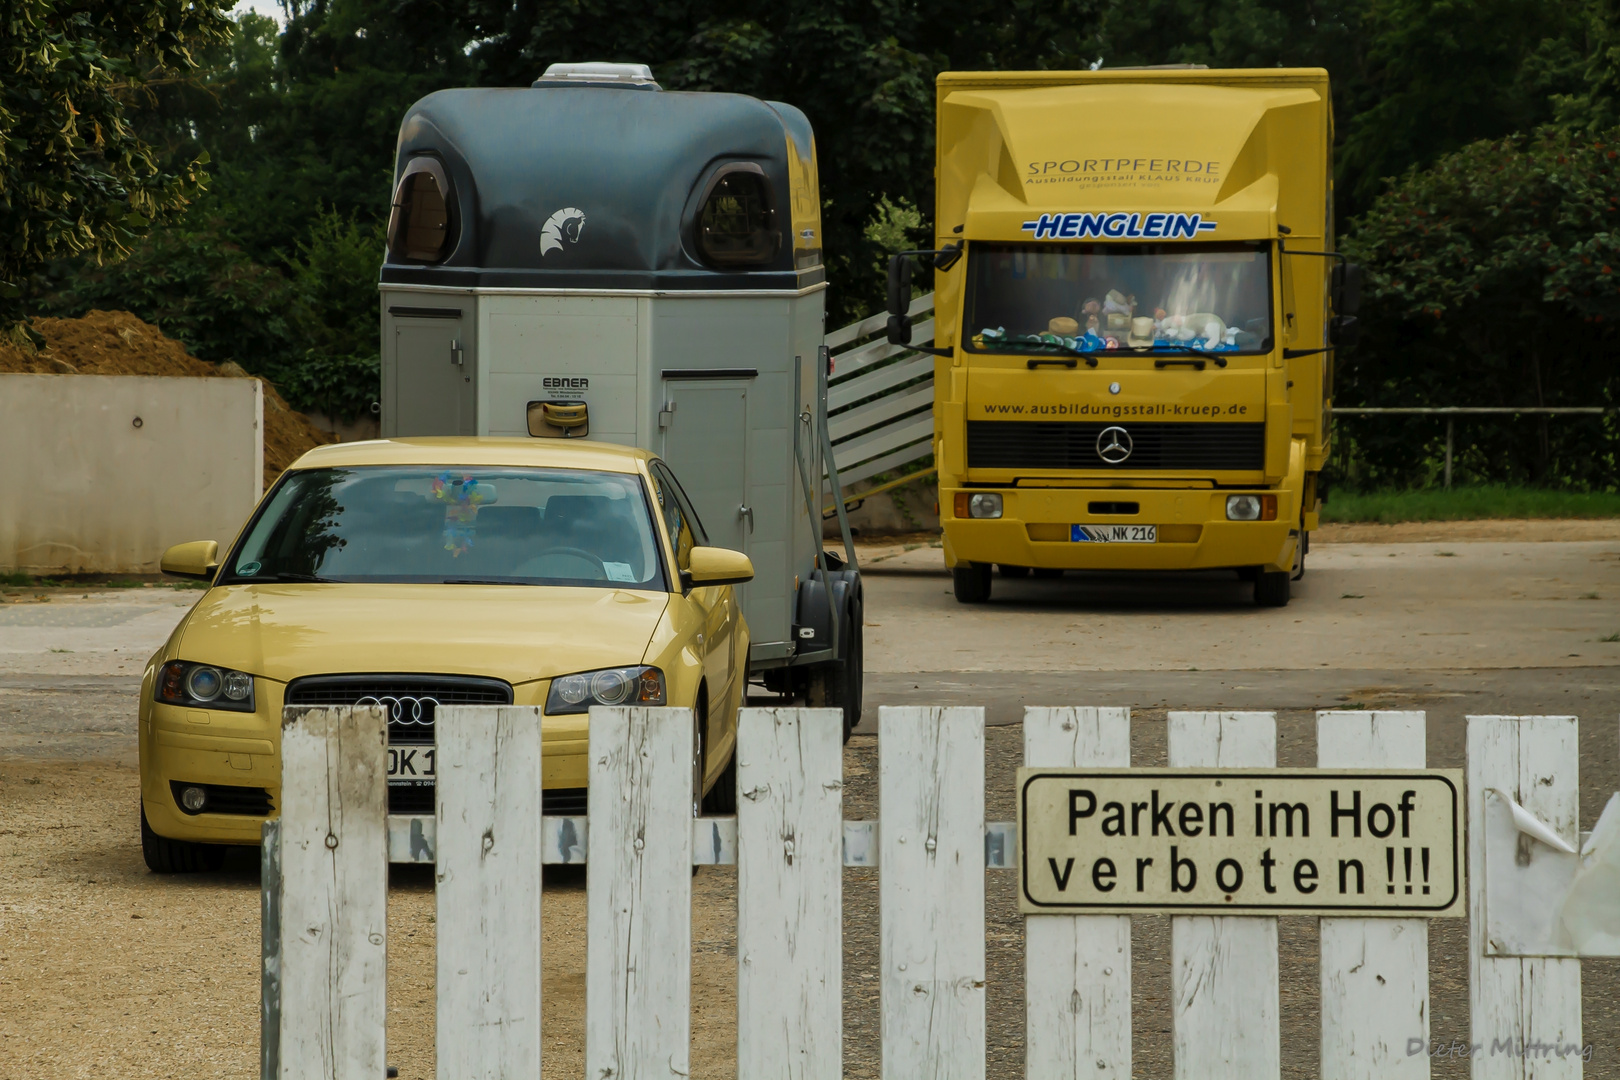 "Parken im Hof verboten!!!"